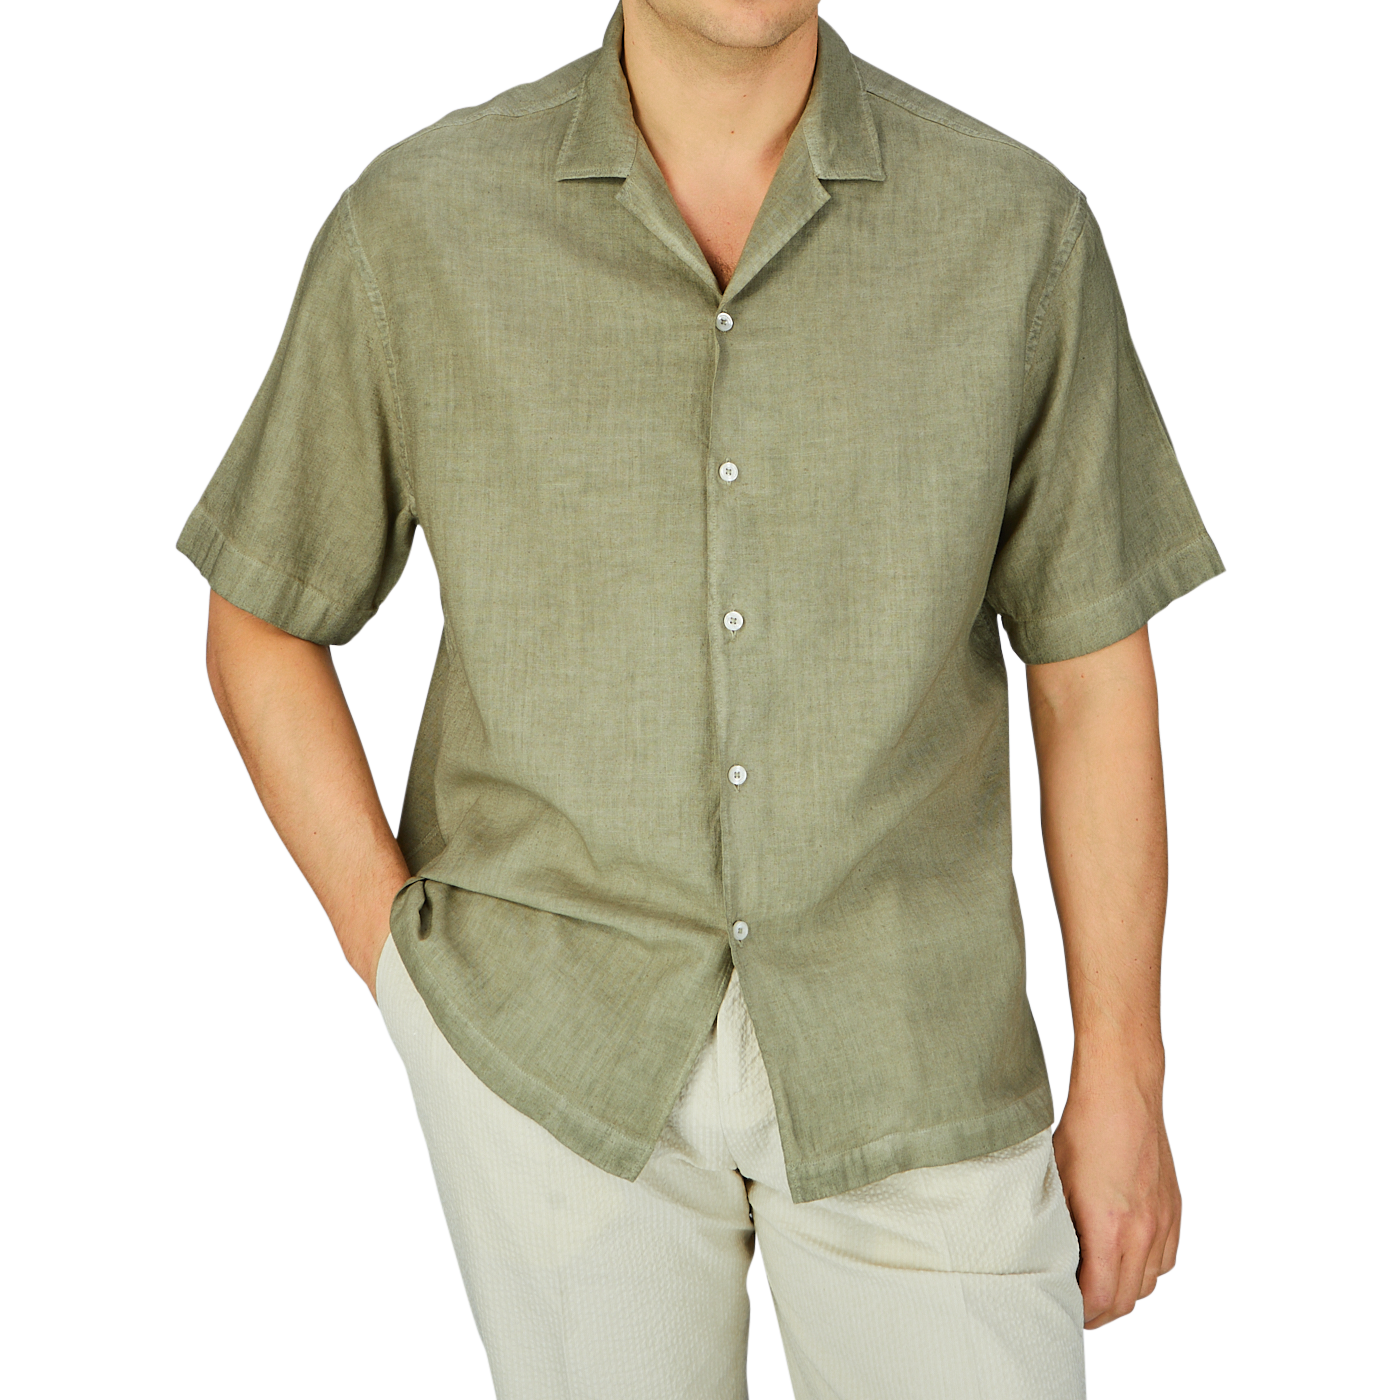 Man wearing a casual Altea Moss Green Linen Blend Camp Collar Shirt and light trousers, ideal as a summer essential.